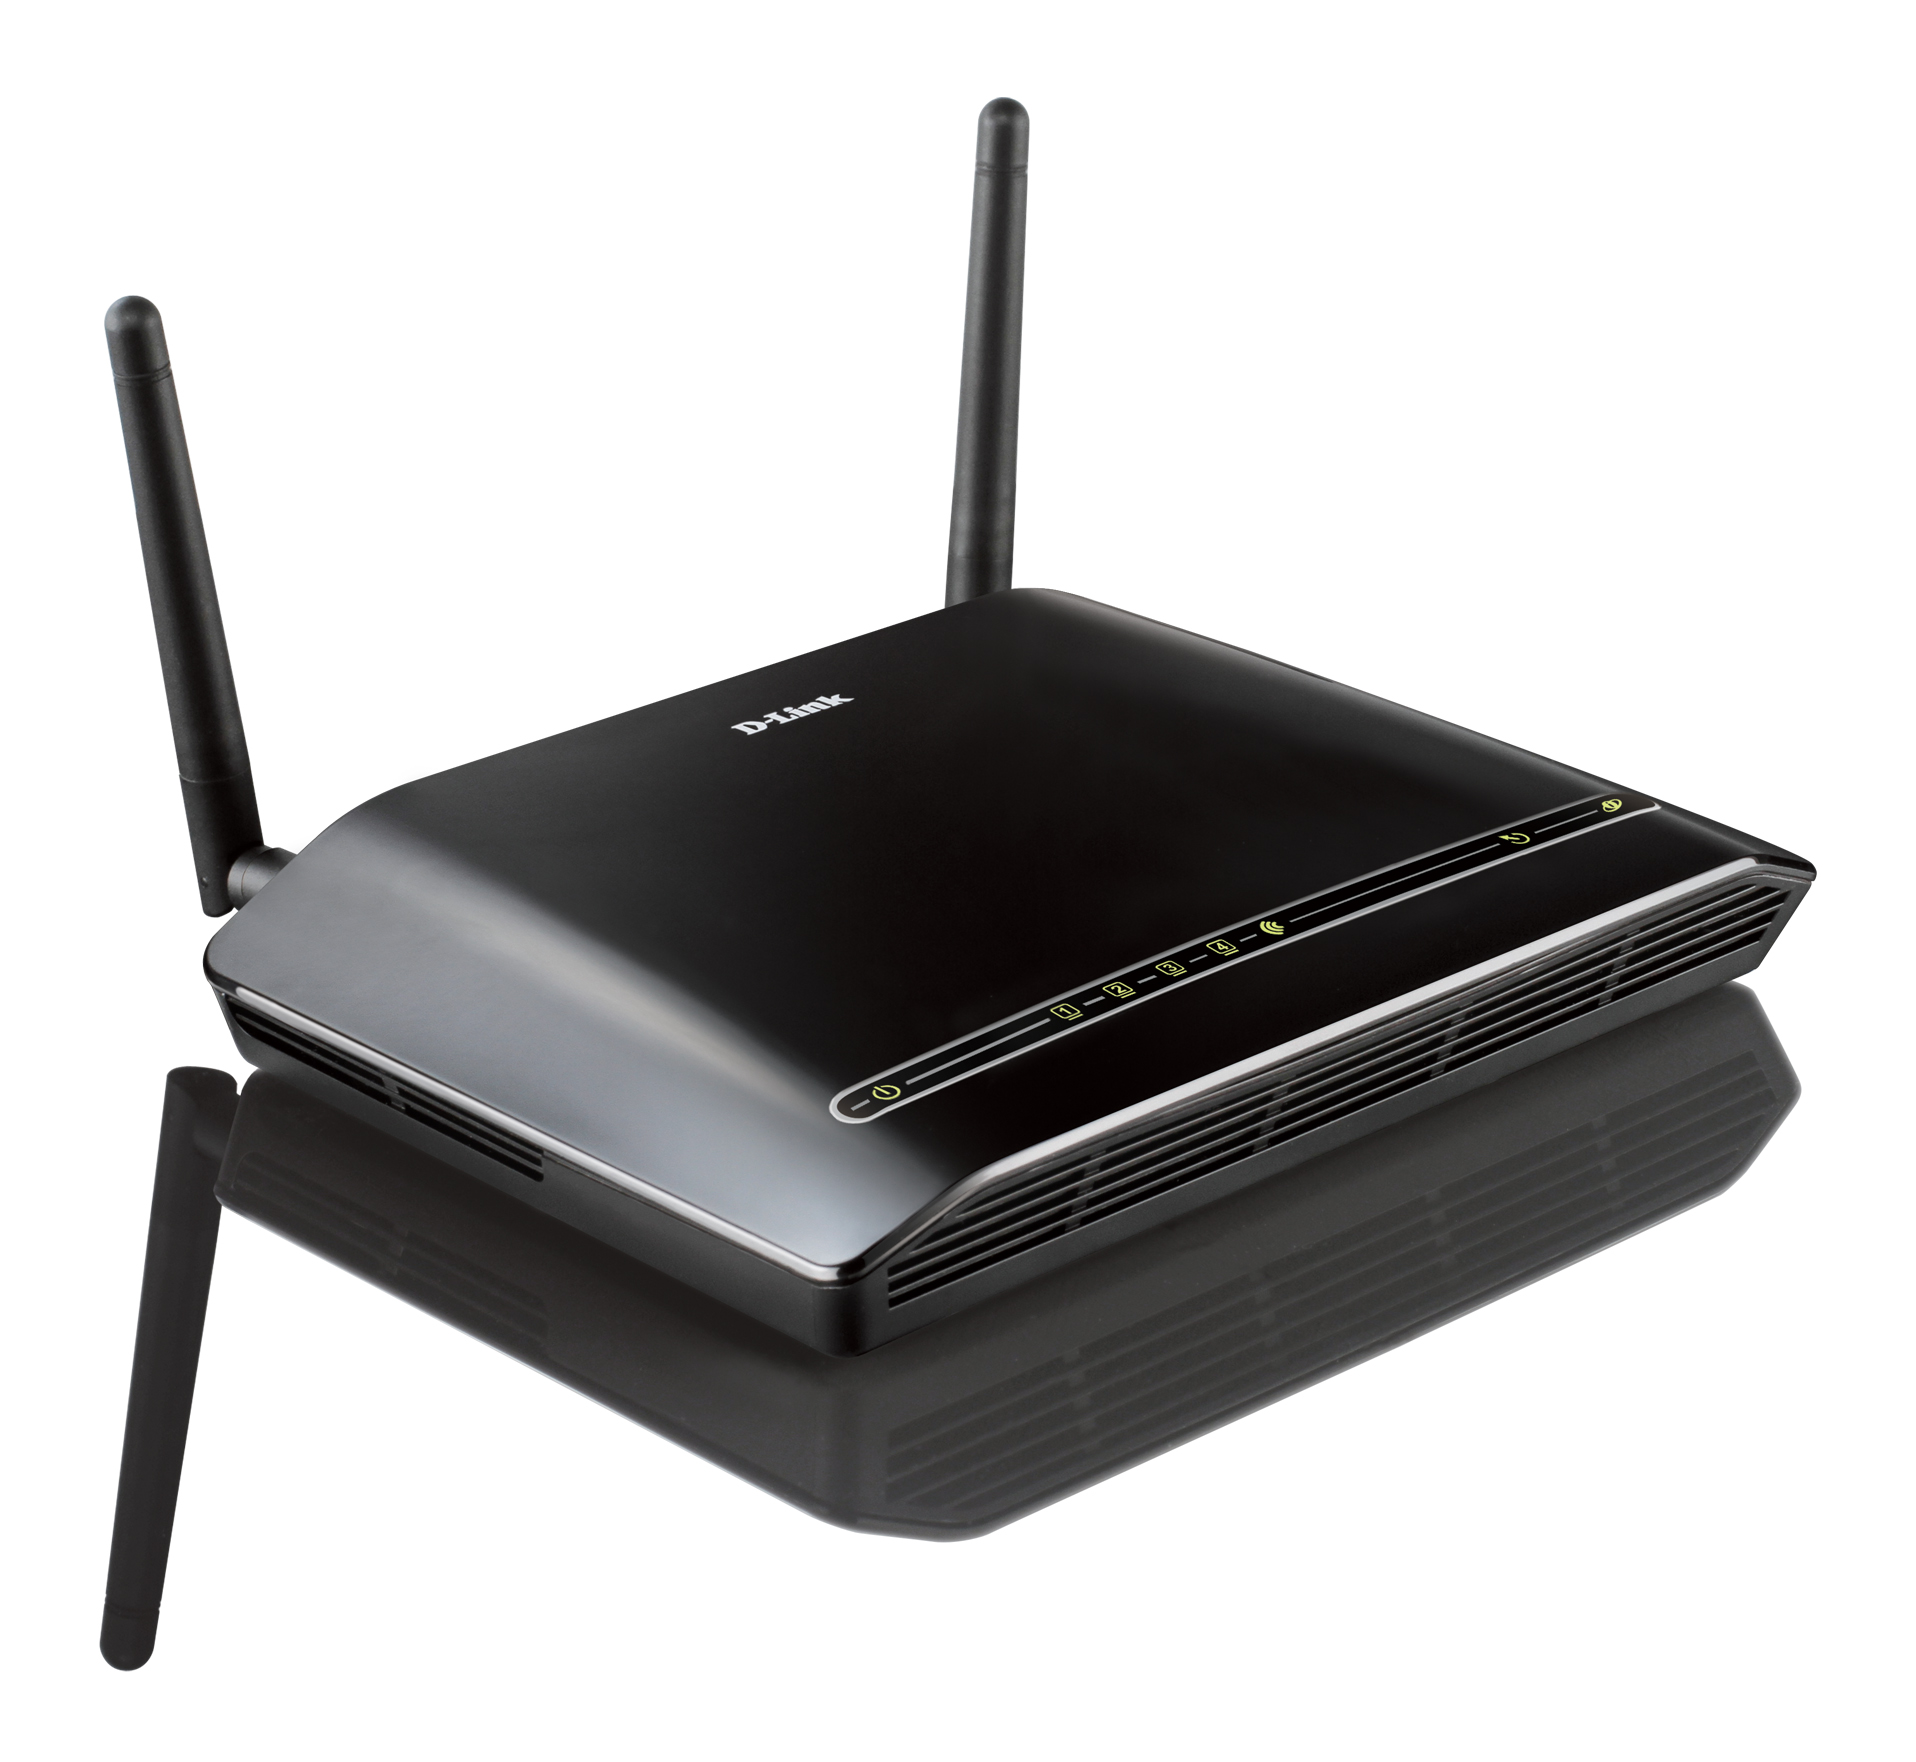 DSL-2740R N300 ADSL2+ Router | D-Link UK